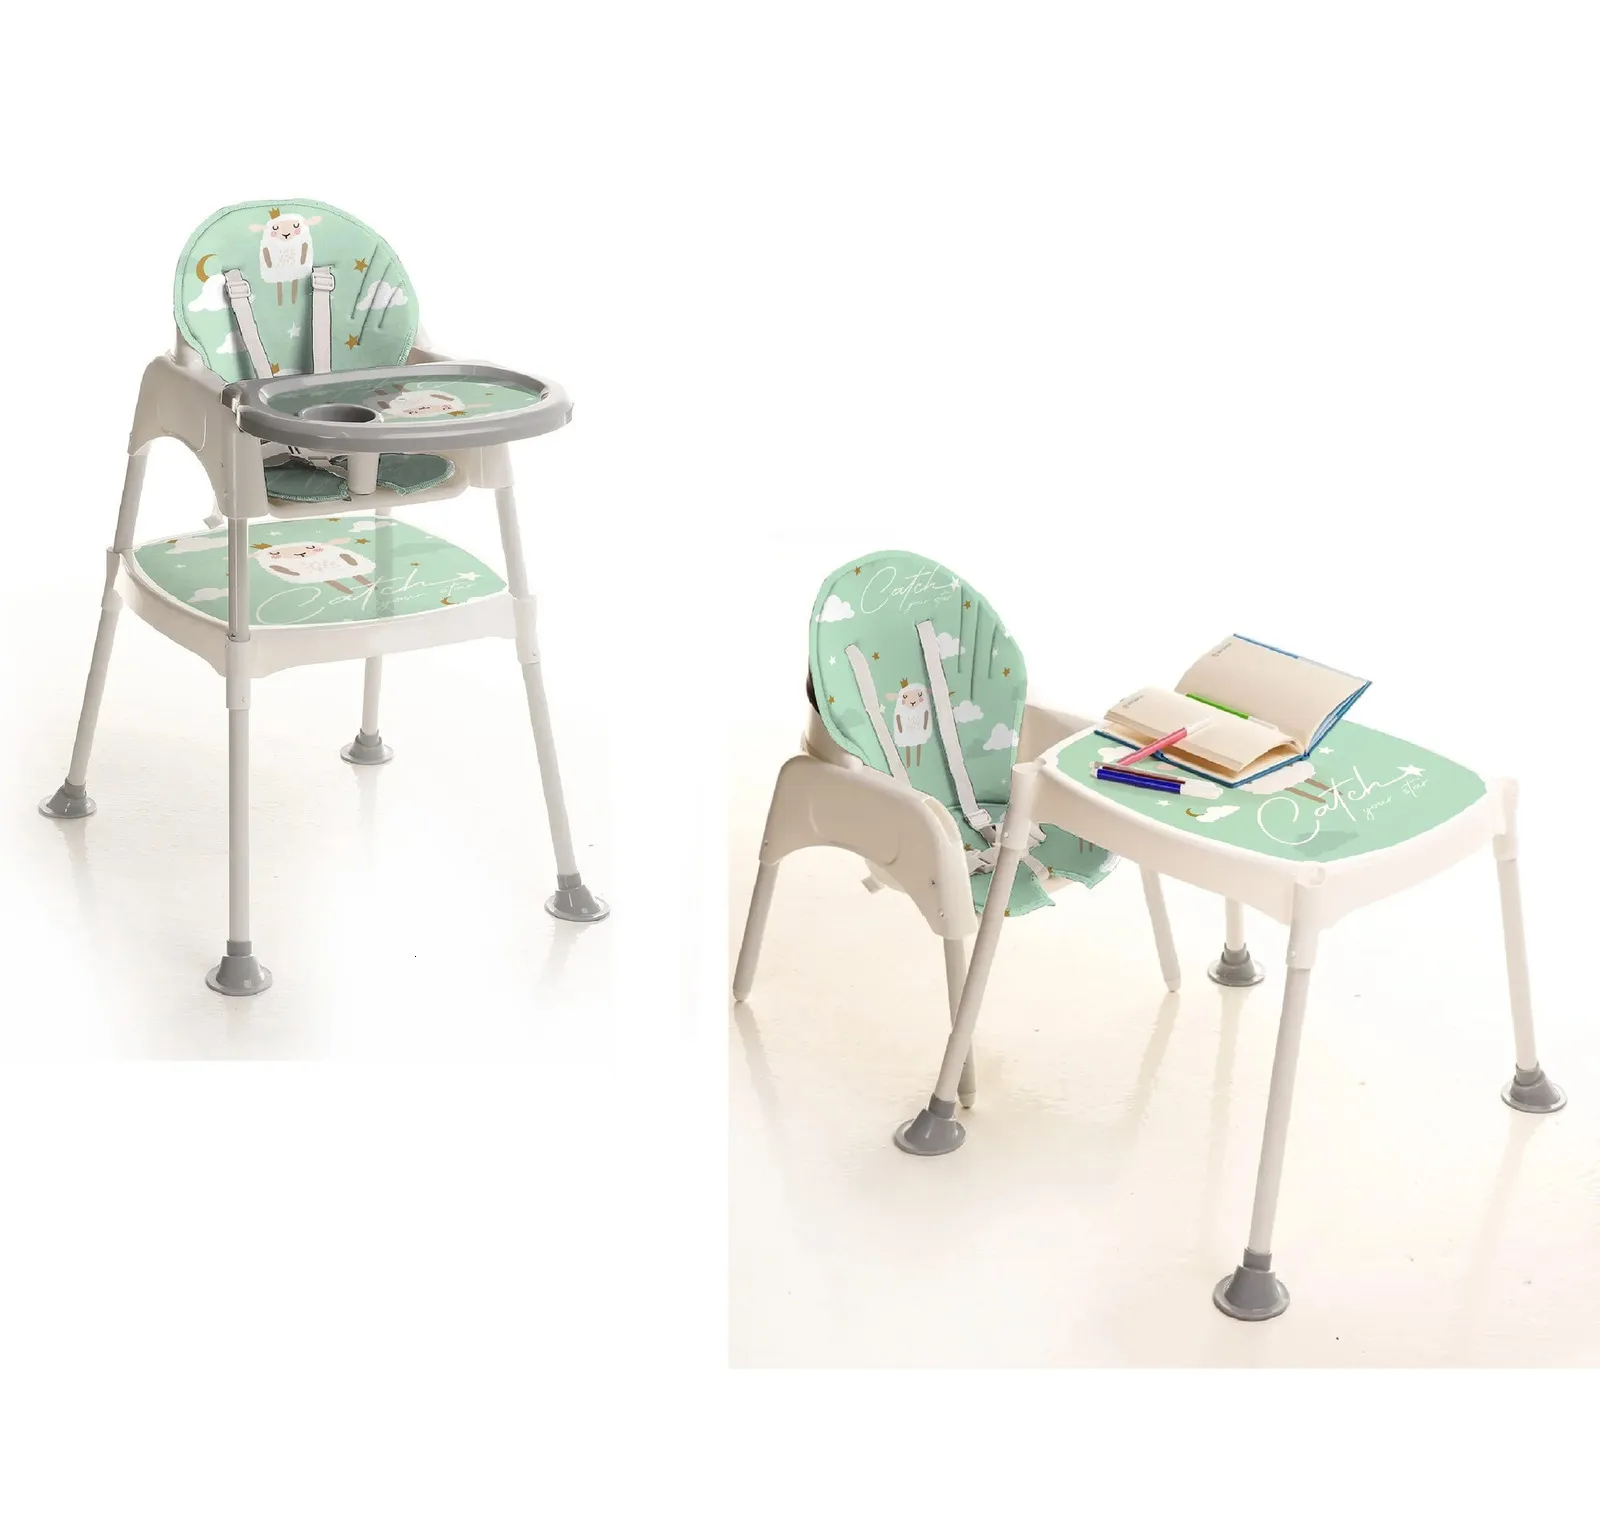 Högstol Baby Feeding High Chair Barnstol Anpassad plastfärgförpackning Material Ursprung Turkiet 240401